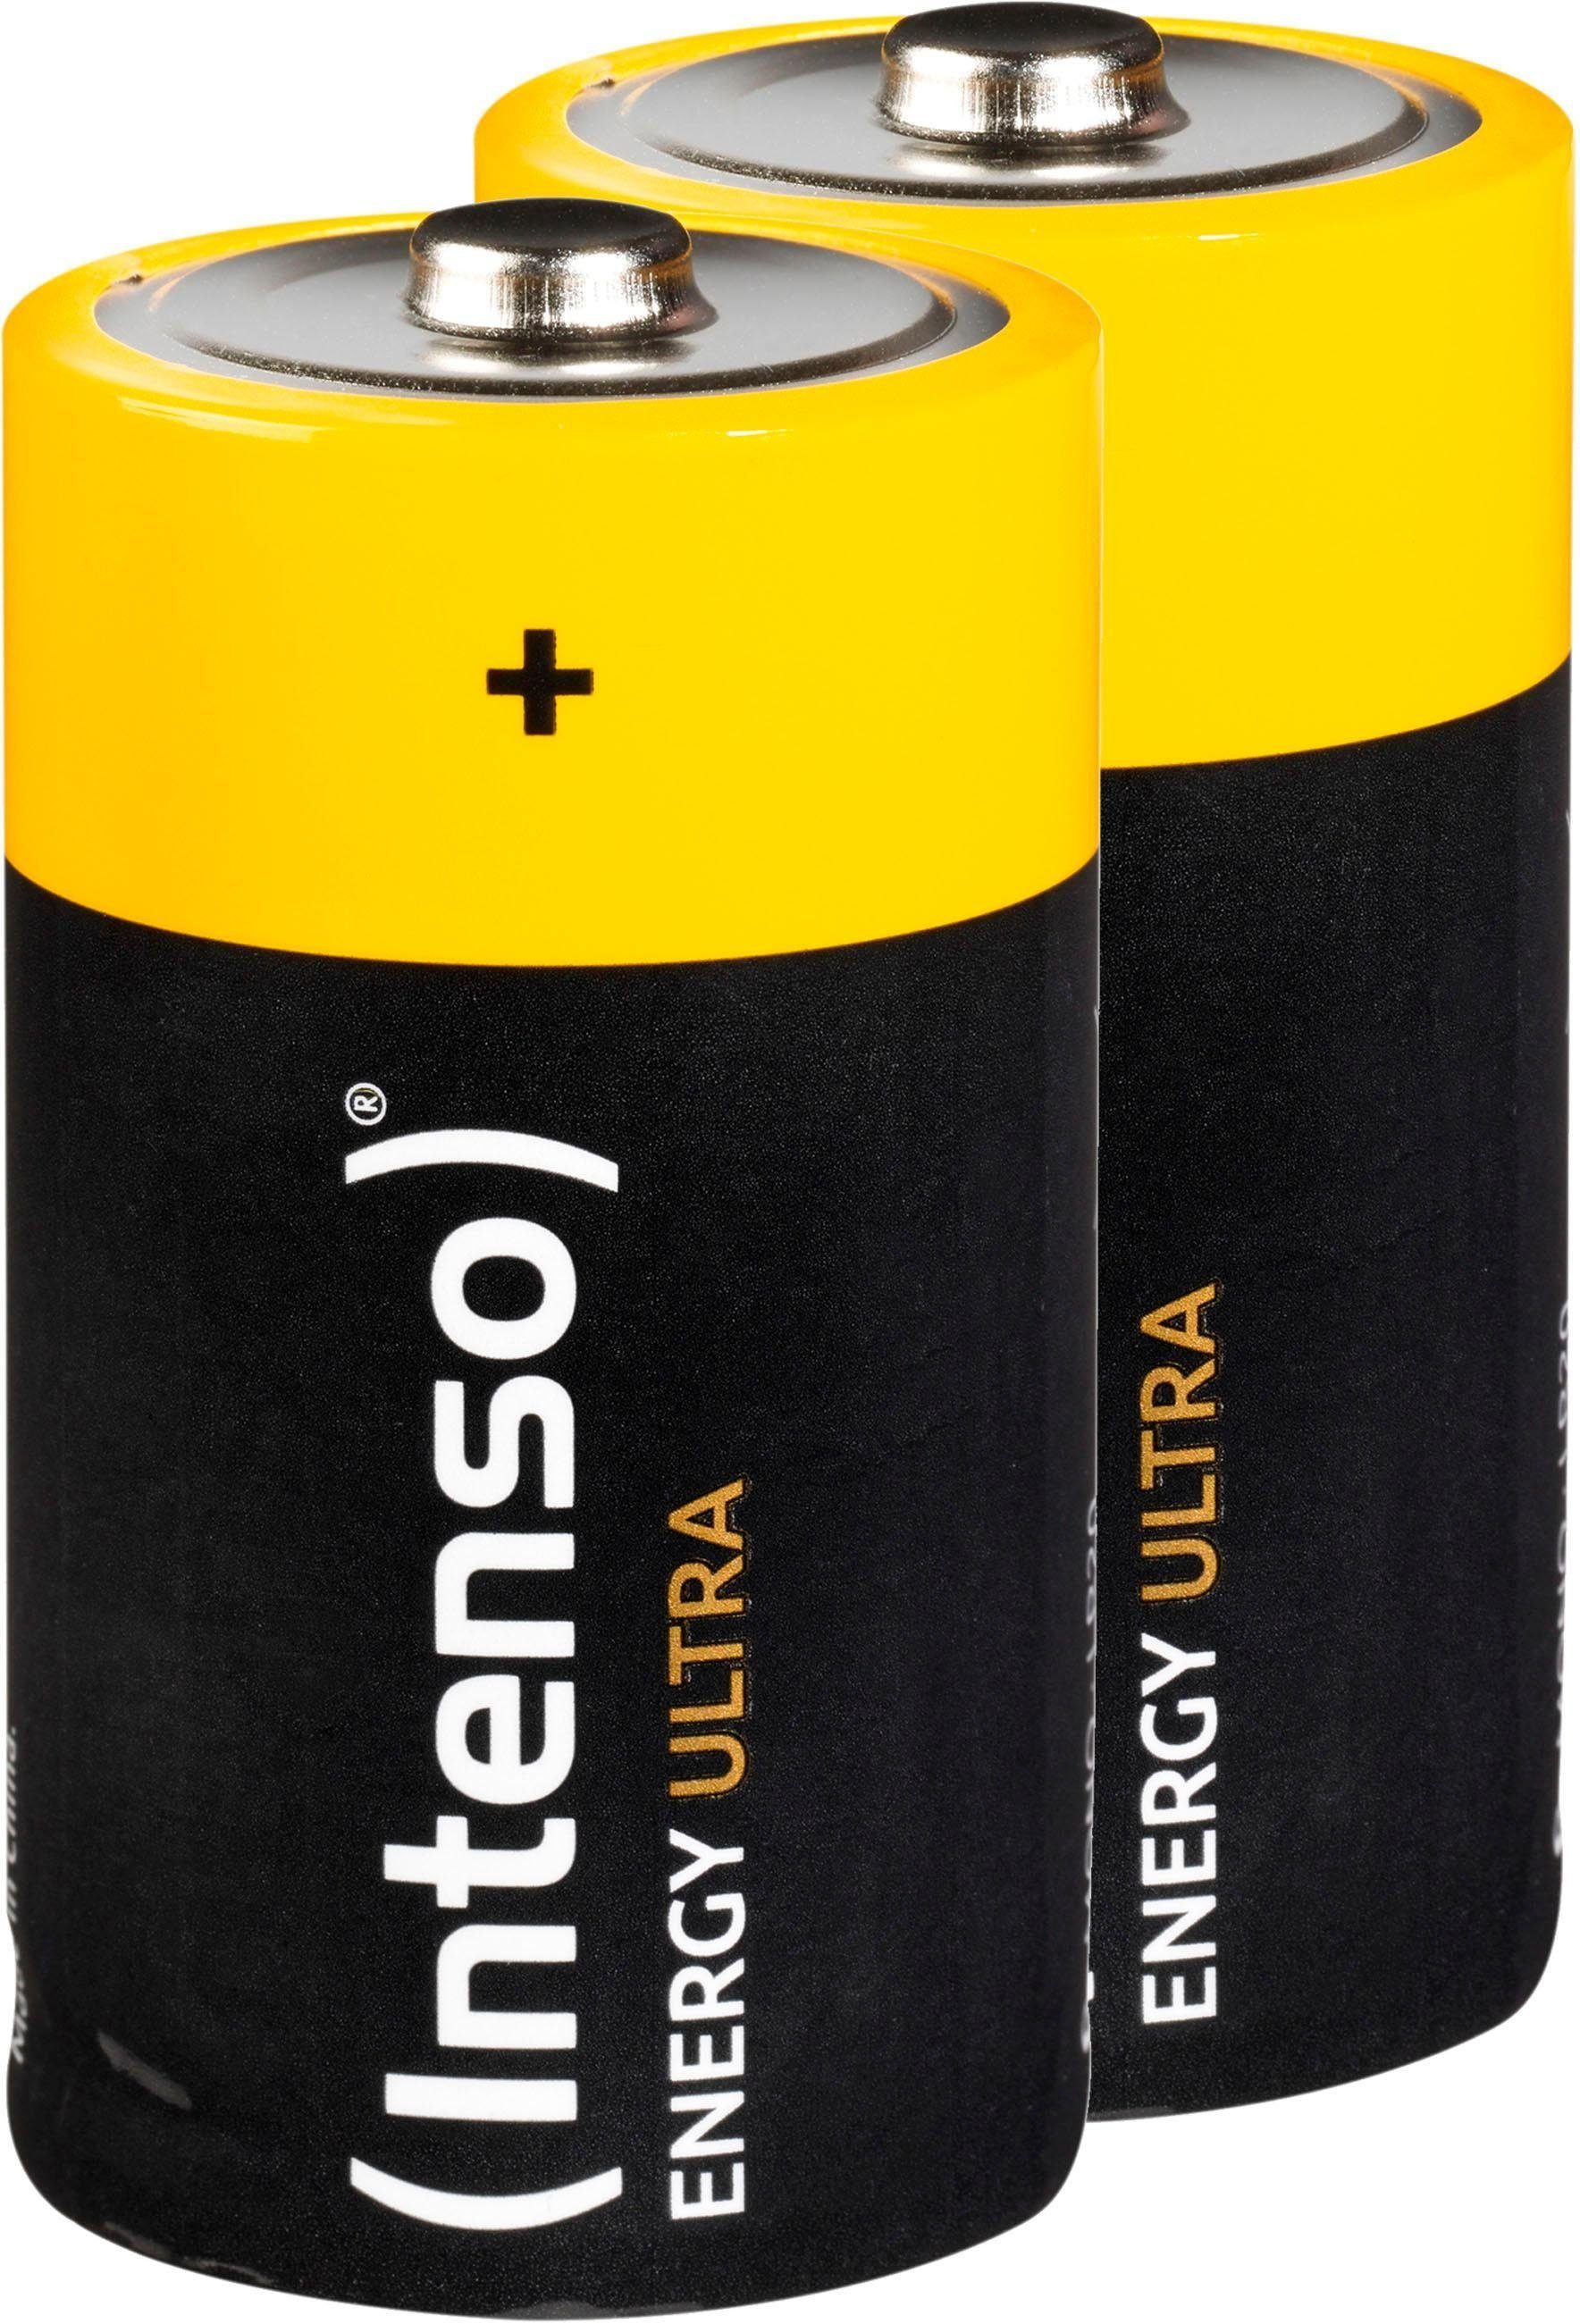 Intenso 2er Pack Energy Ultra D LR20 Batterie, (2 St)